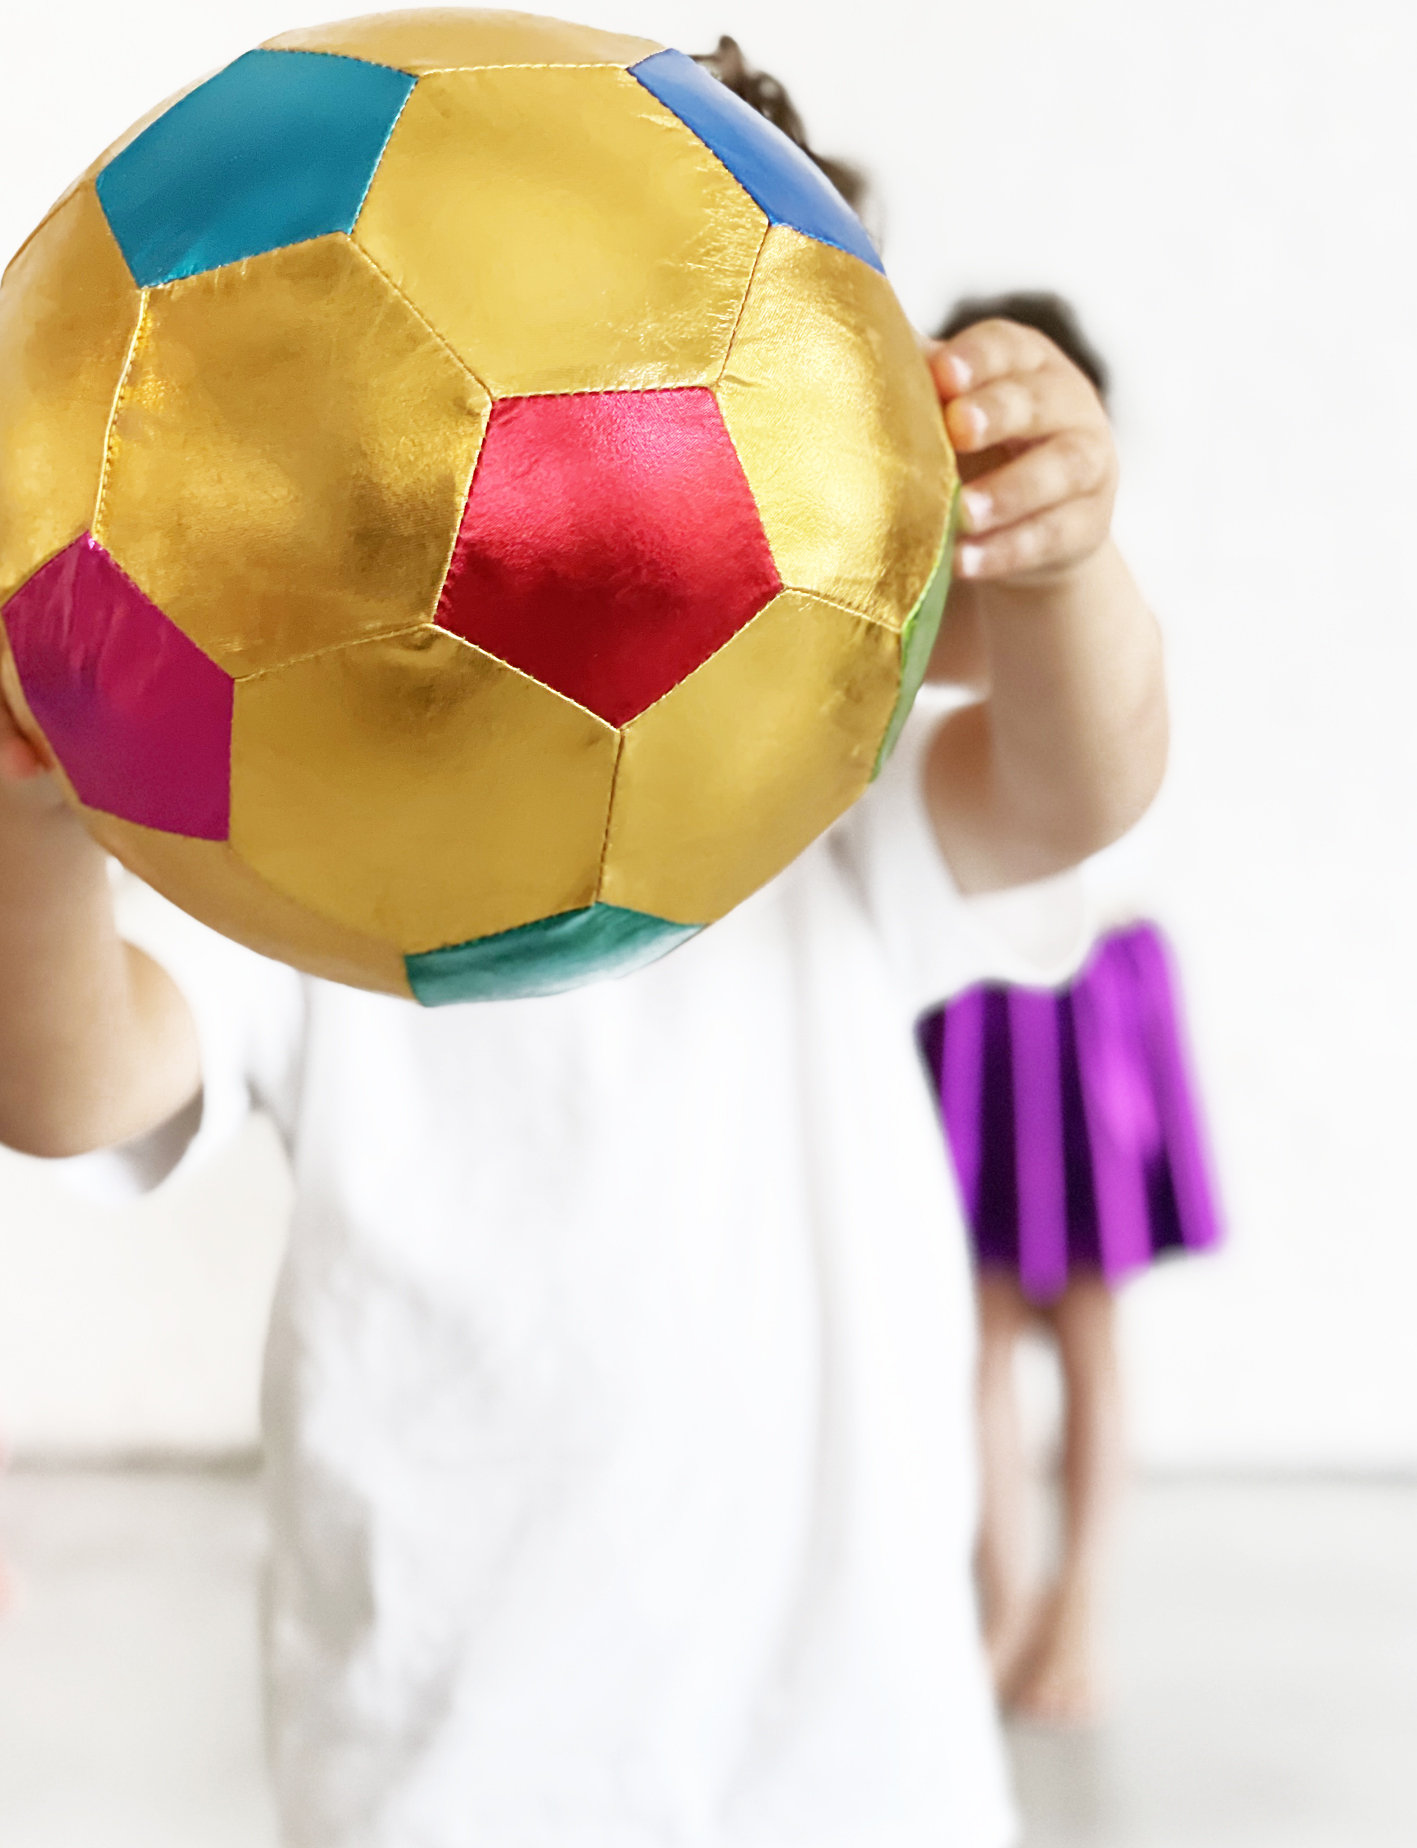 Ballon de football en plastique dégonflé Taille 20,3 cm 1 de 4 couleurs  assorties Doré/blanc/rouge ou bleu